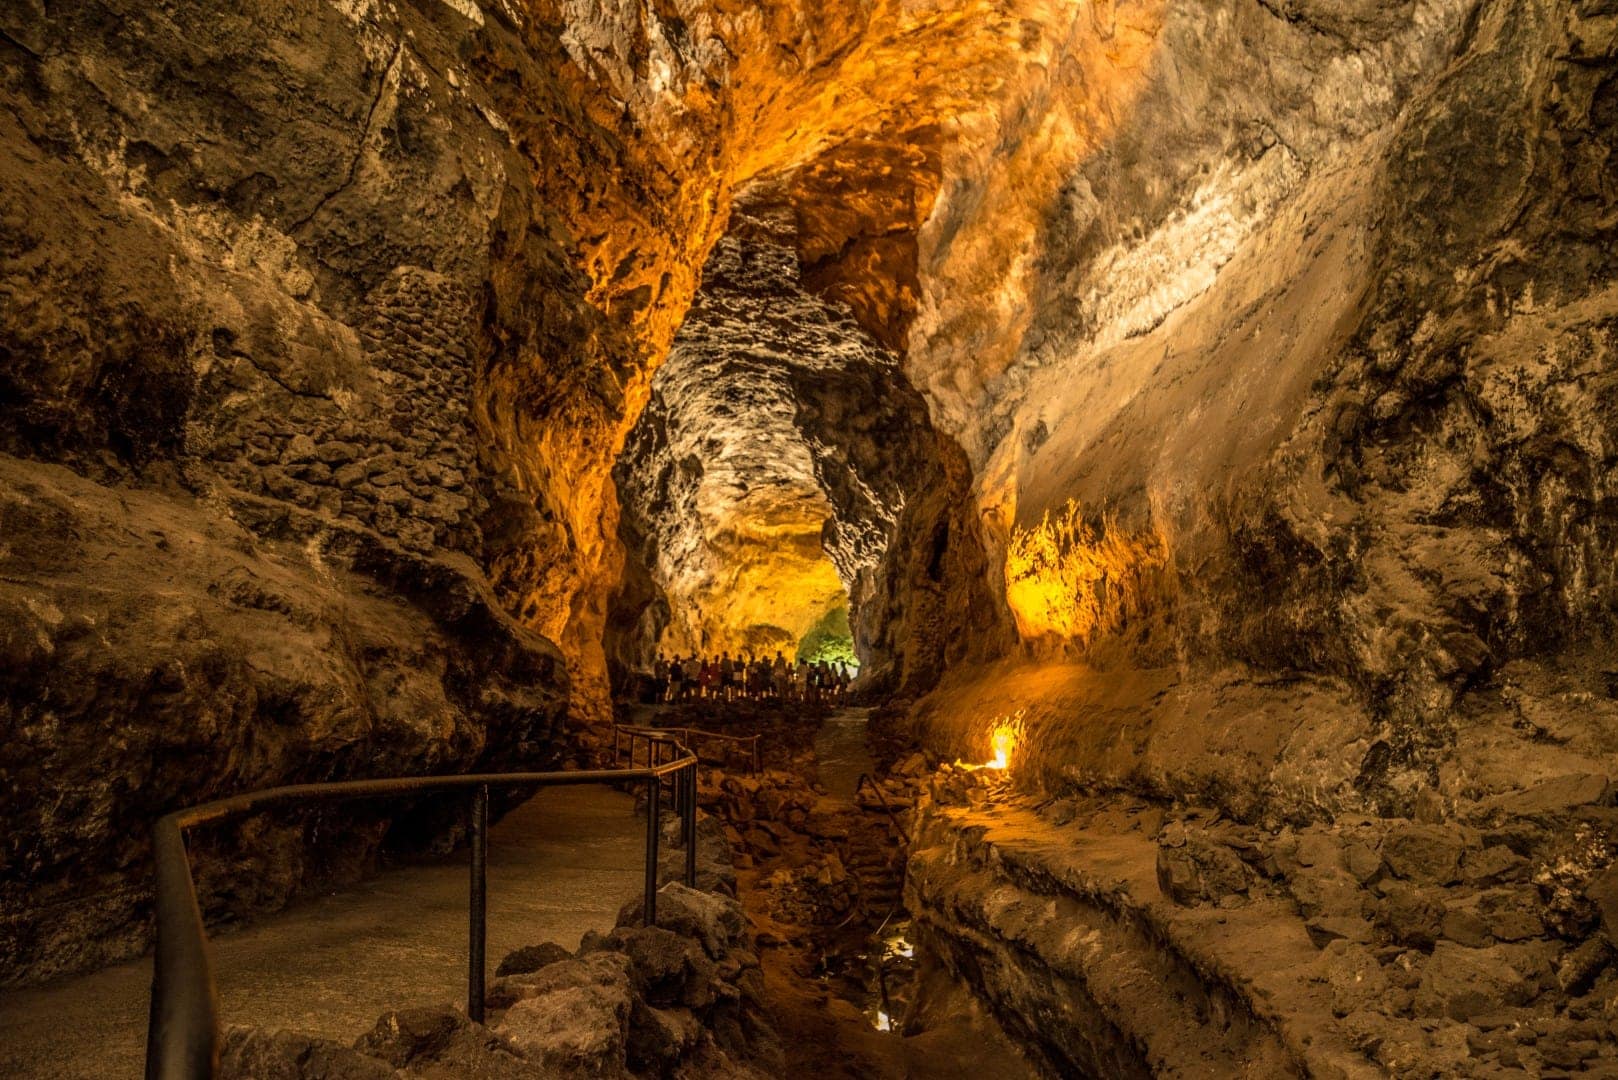 View of the interior of the Cueva de los Verdes